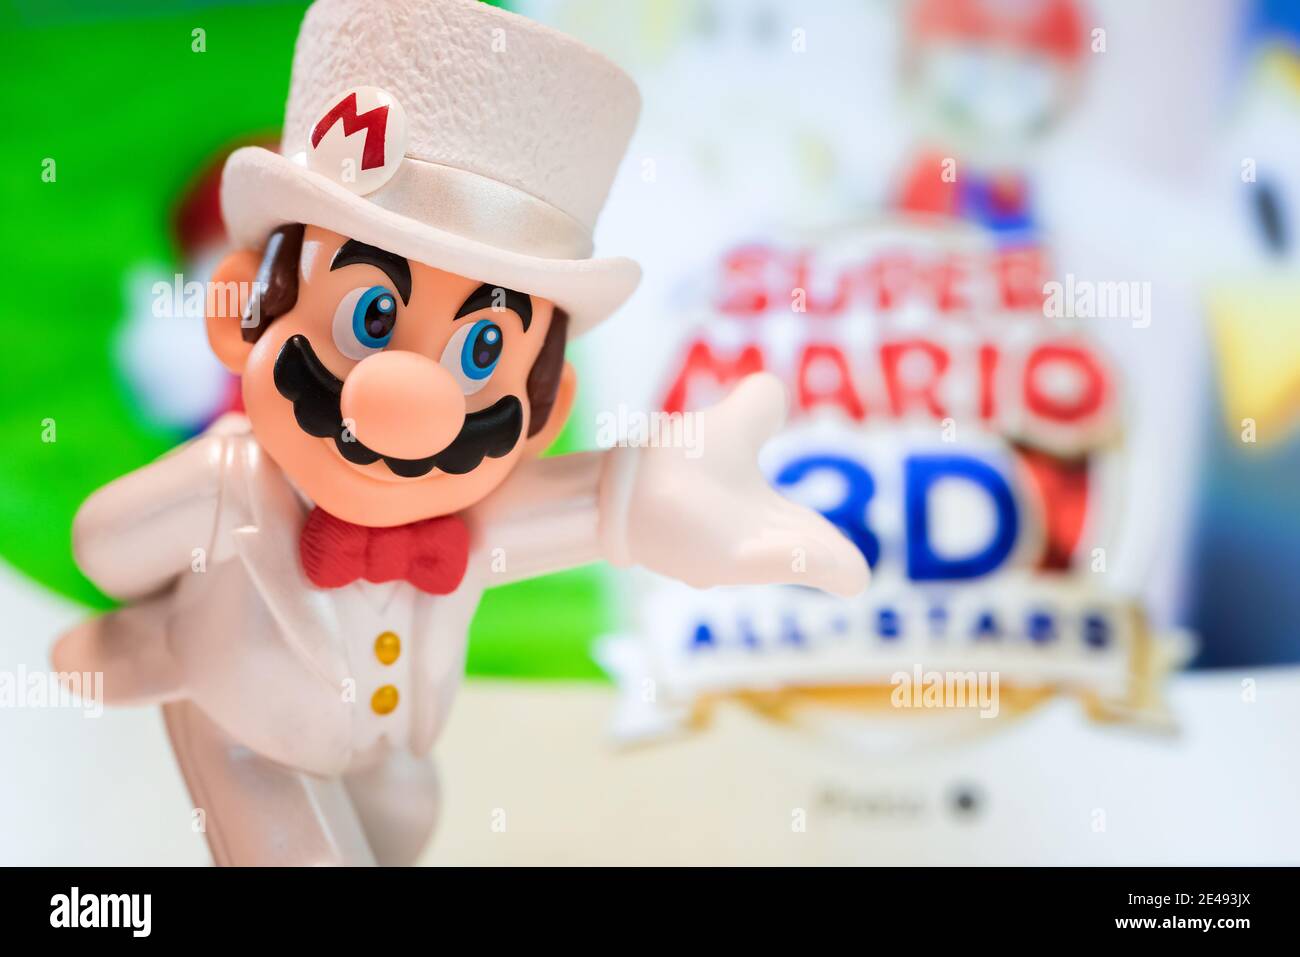 MOSKAU, RUSSLAND - 22. August 2020: Super Mario Bros Figur Charakter.Super Mario ist eine japanische Plattform Videospiel-Serie und Medien-Franchise erstellt b Stockfoto